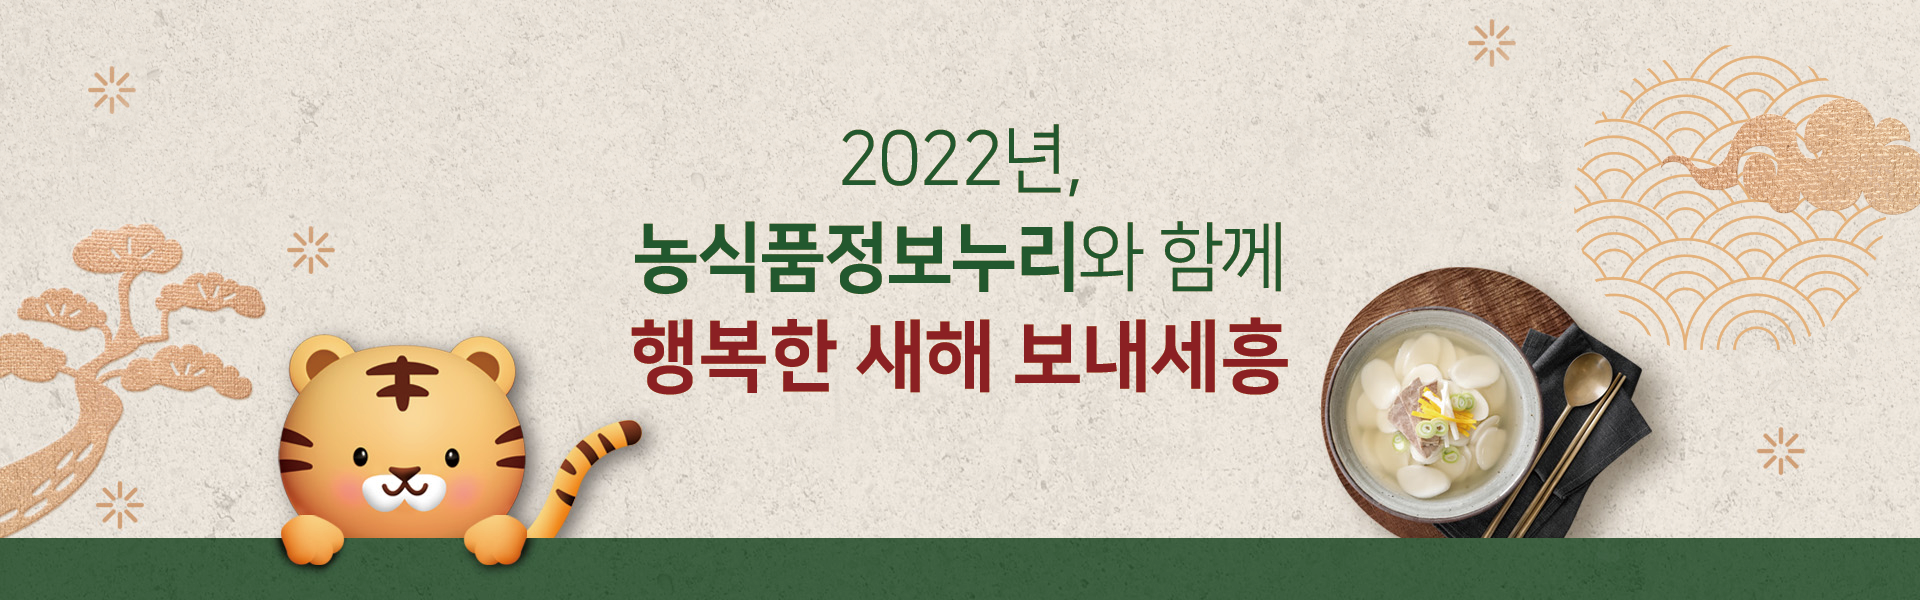 2022년, 농식품정보누리와 함께 행복한 새해 보내세흥